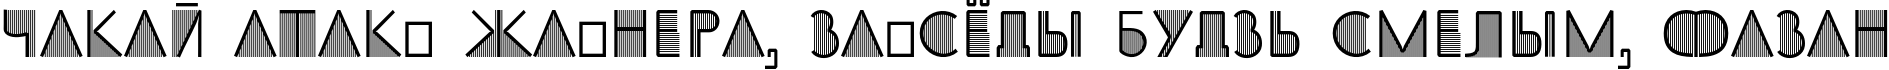 Пример написания шрифтом SS_Adec2.0_initials текста на белорусском